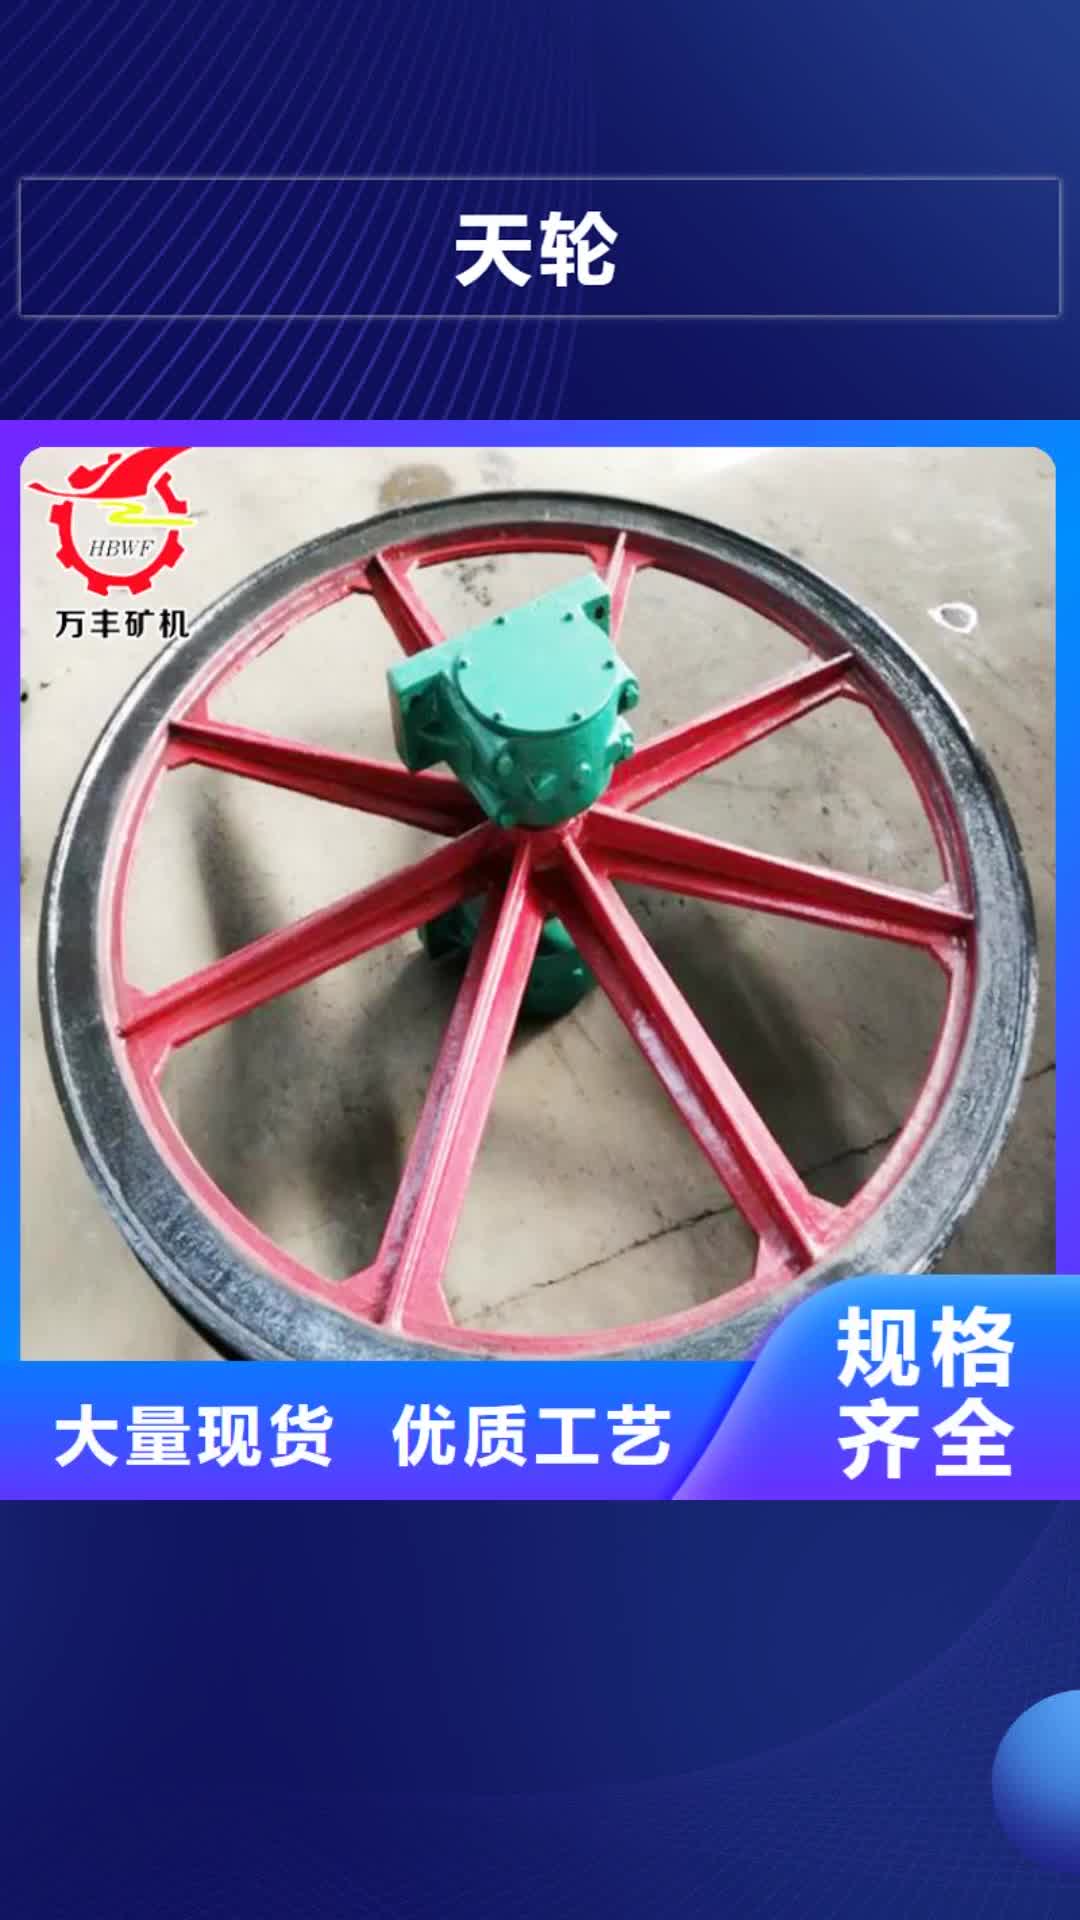 自贡【天轮】,JTP型矿用提升绞车从源头保证品质